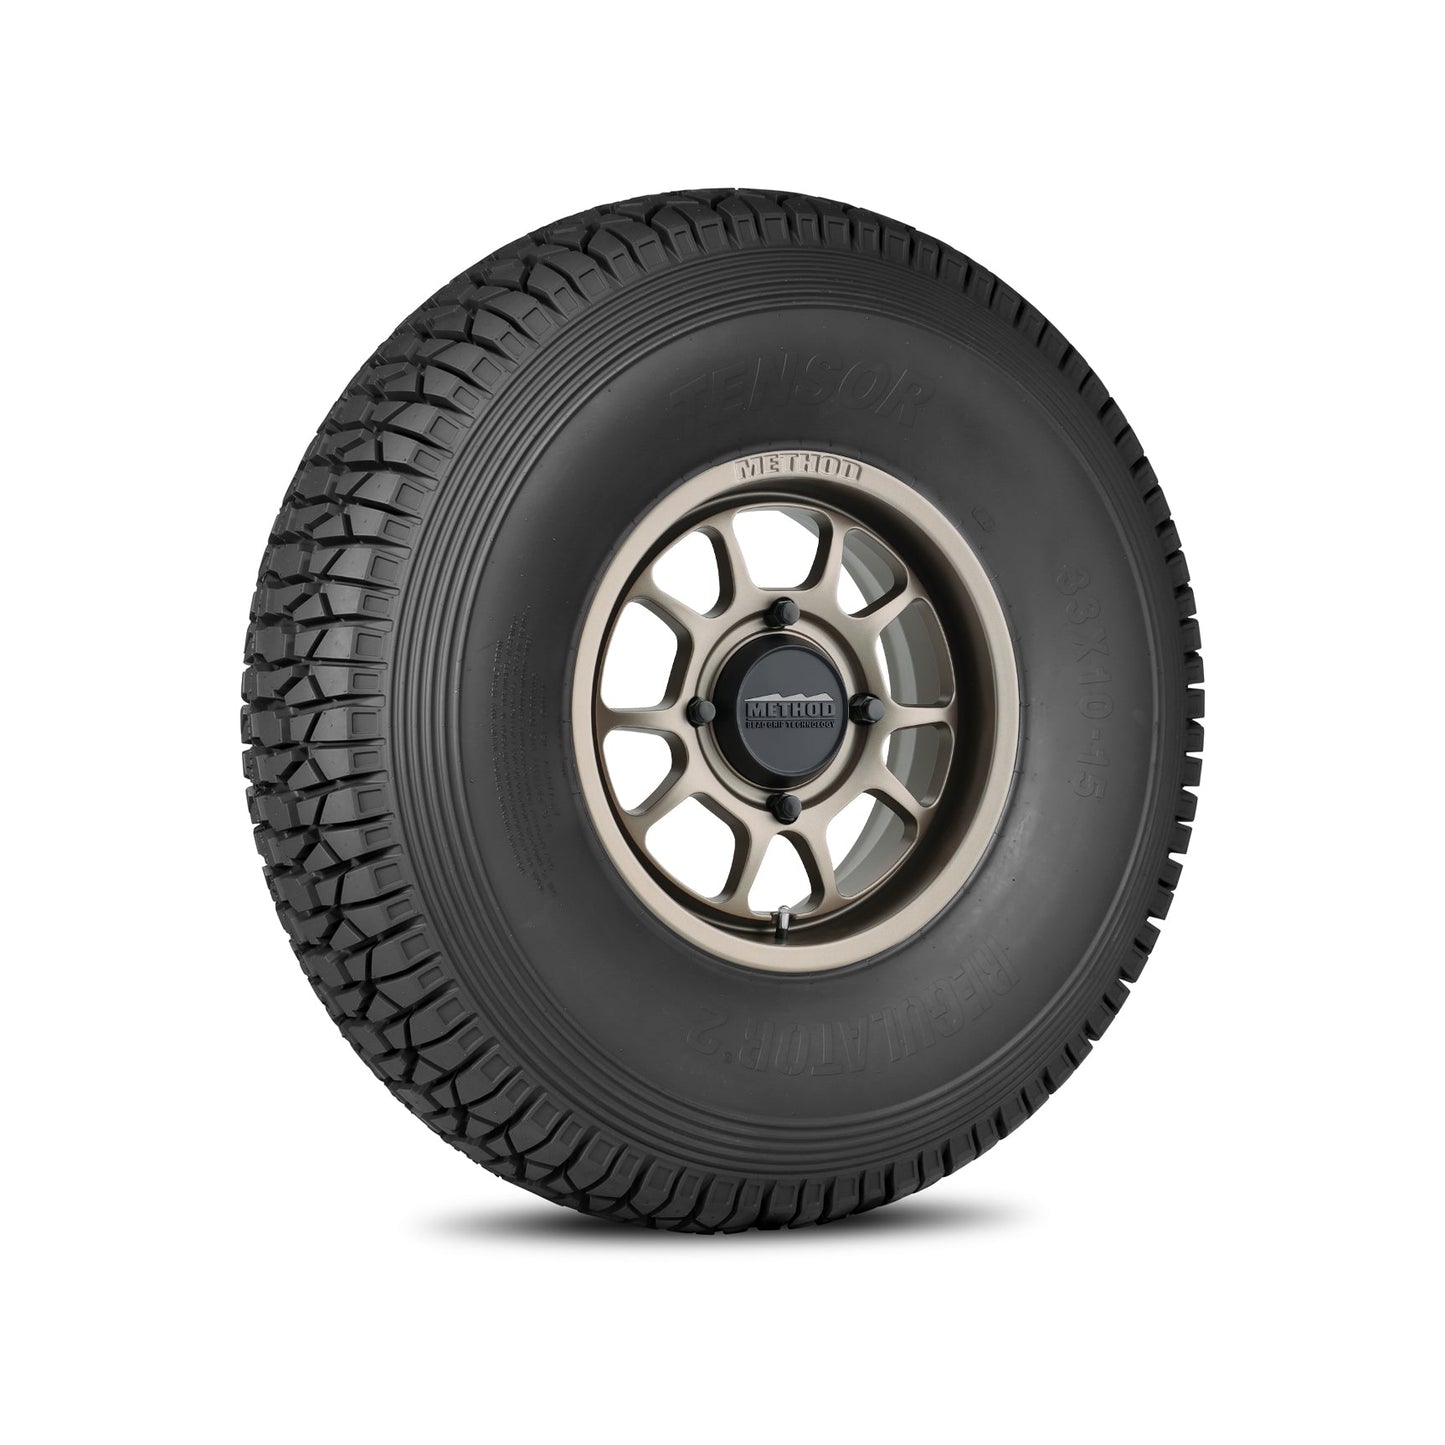 Method 409 Bead Grip - Steel Grey + Tensor Tire Regulator 2